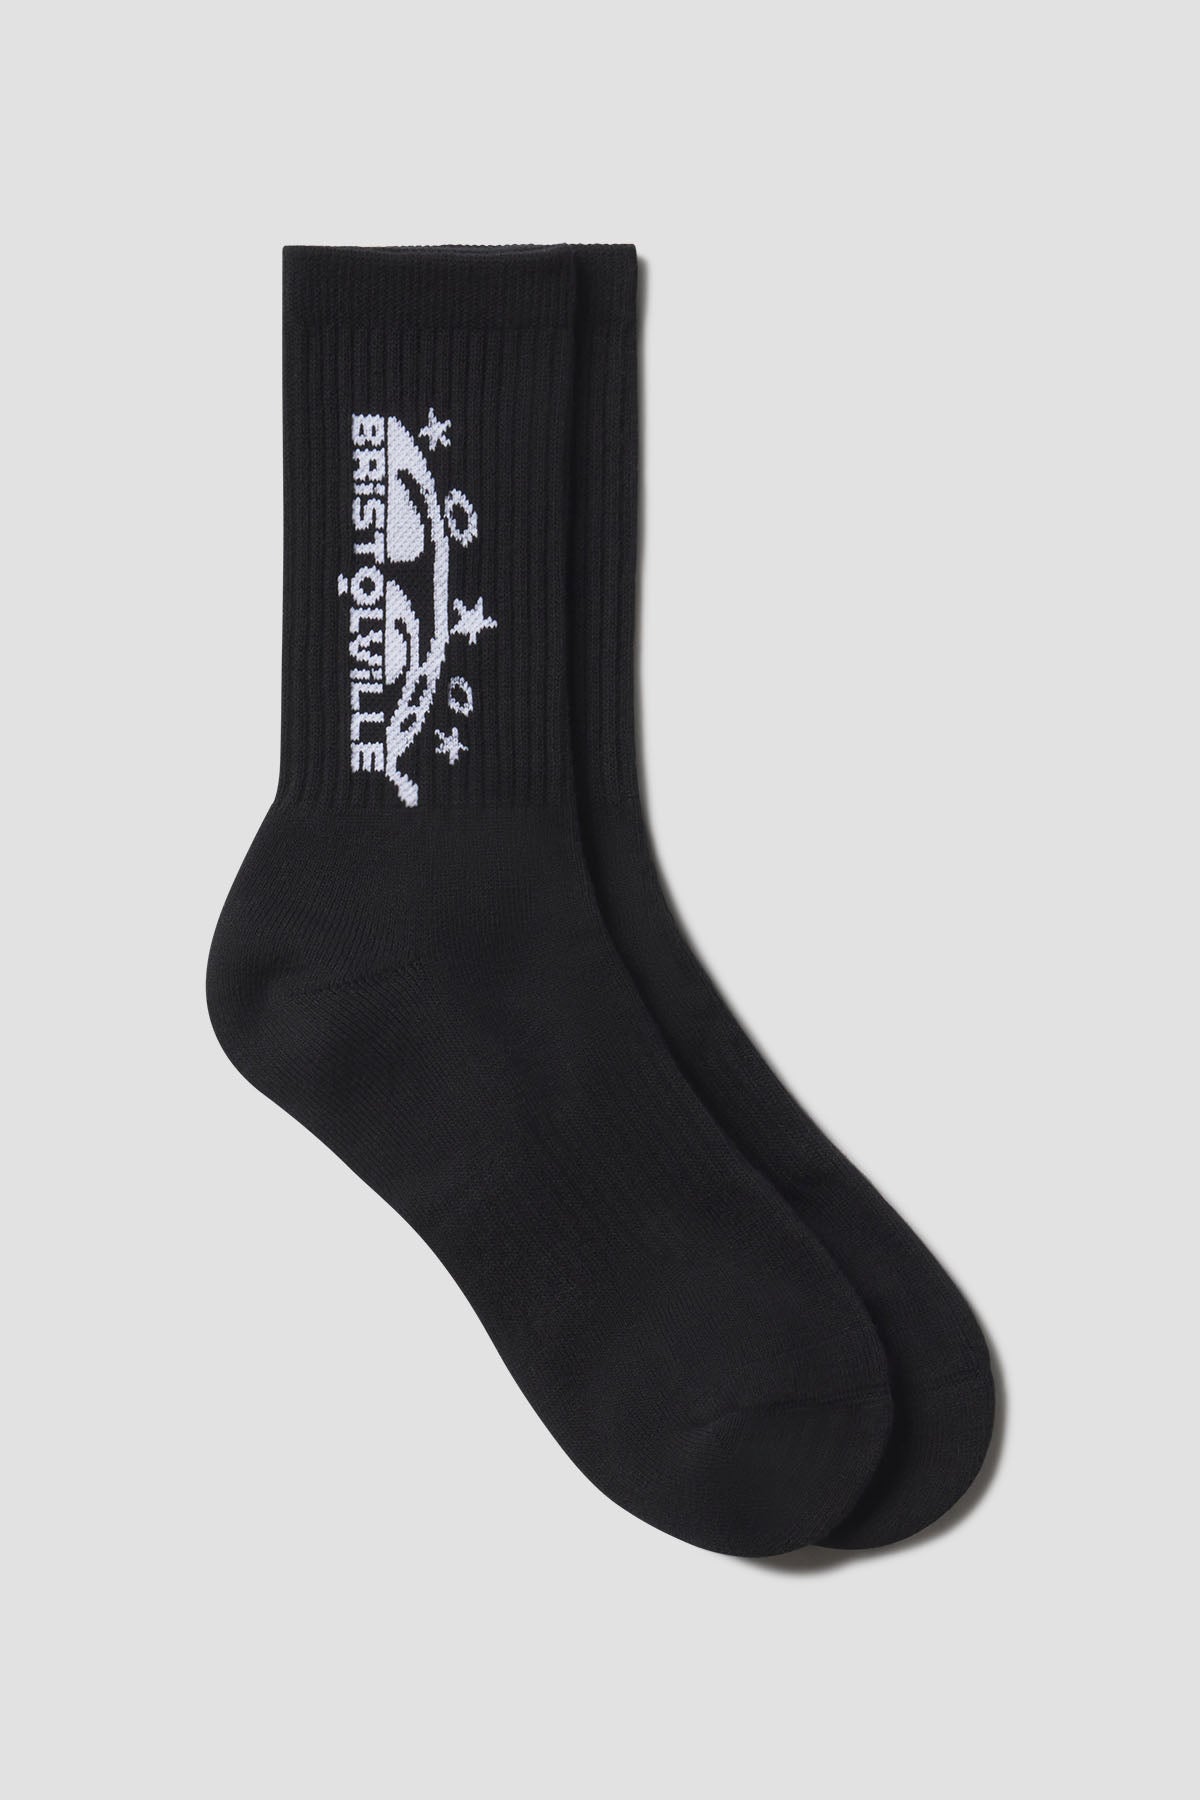 Bristolville Socks